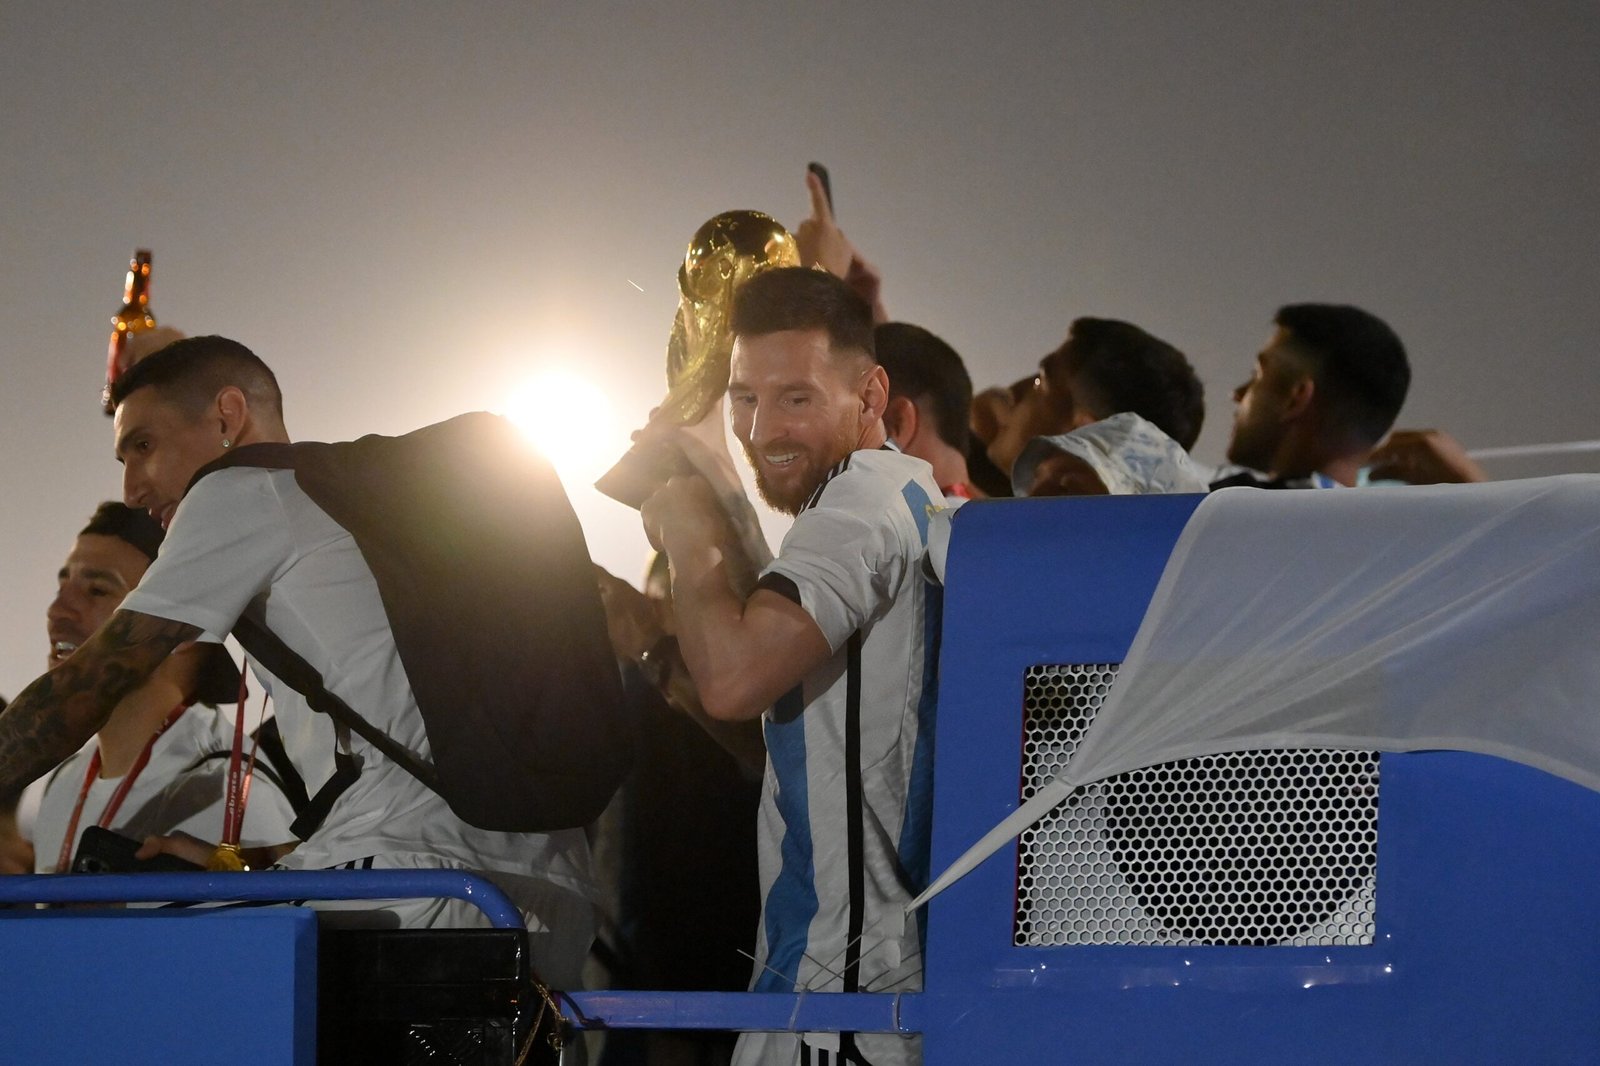 La selección nacional de fútbol campeona del mundo llegará esta tarde al aeropuerto de Ezeiza en un vuelo de Aerolíneas Argentinas